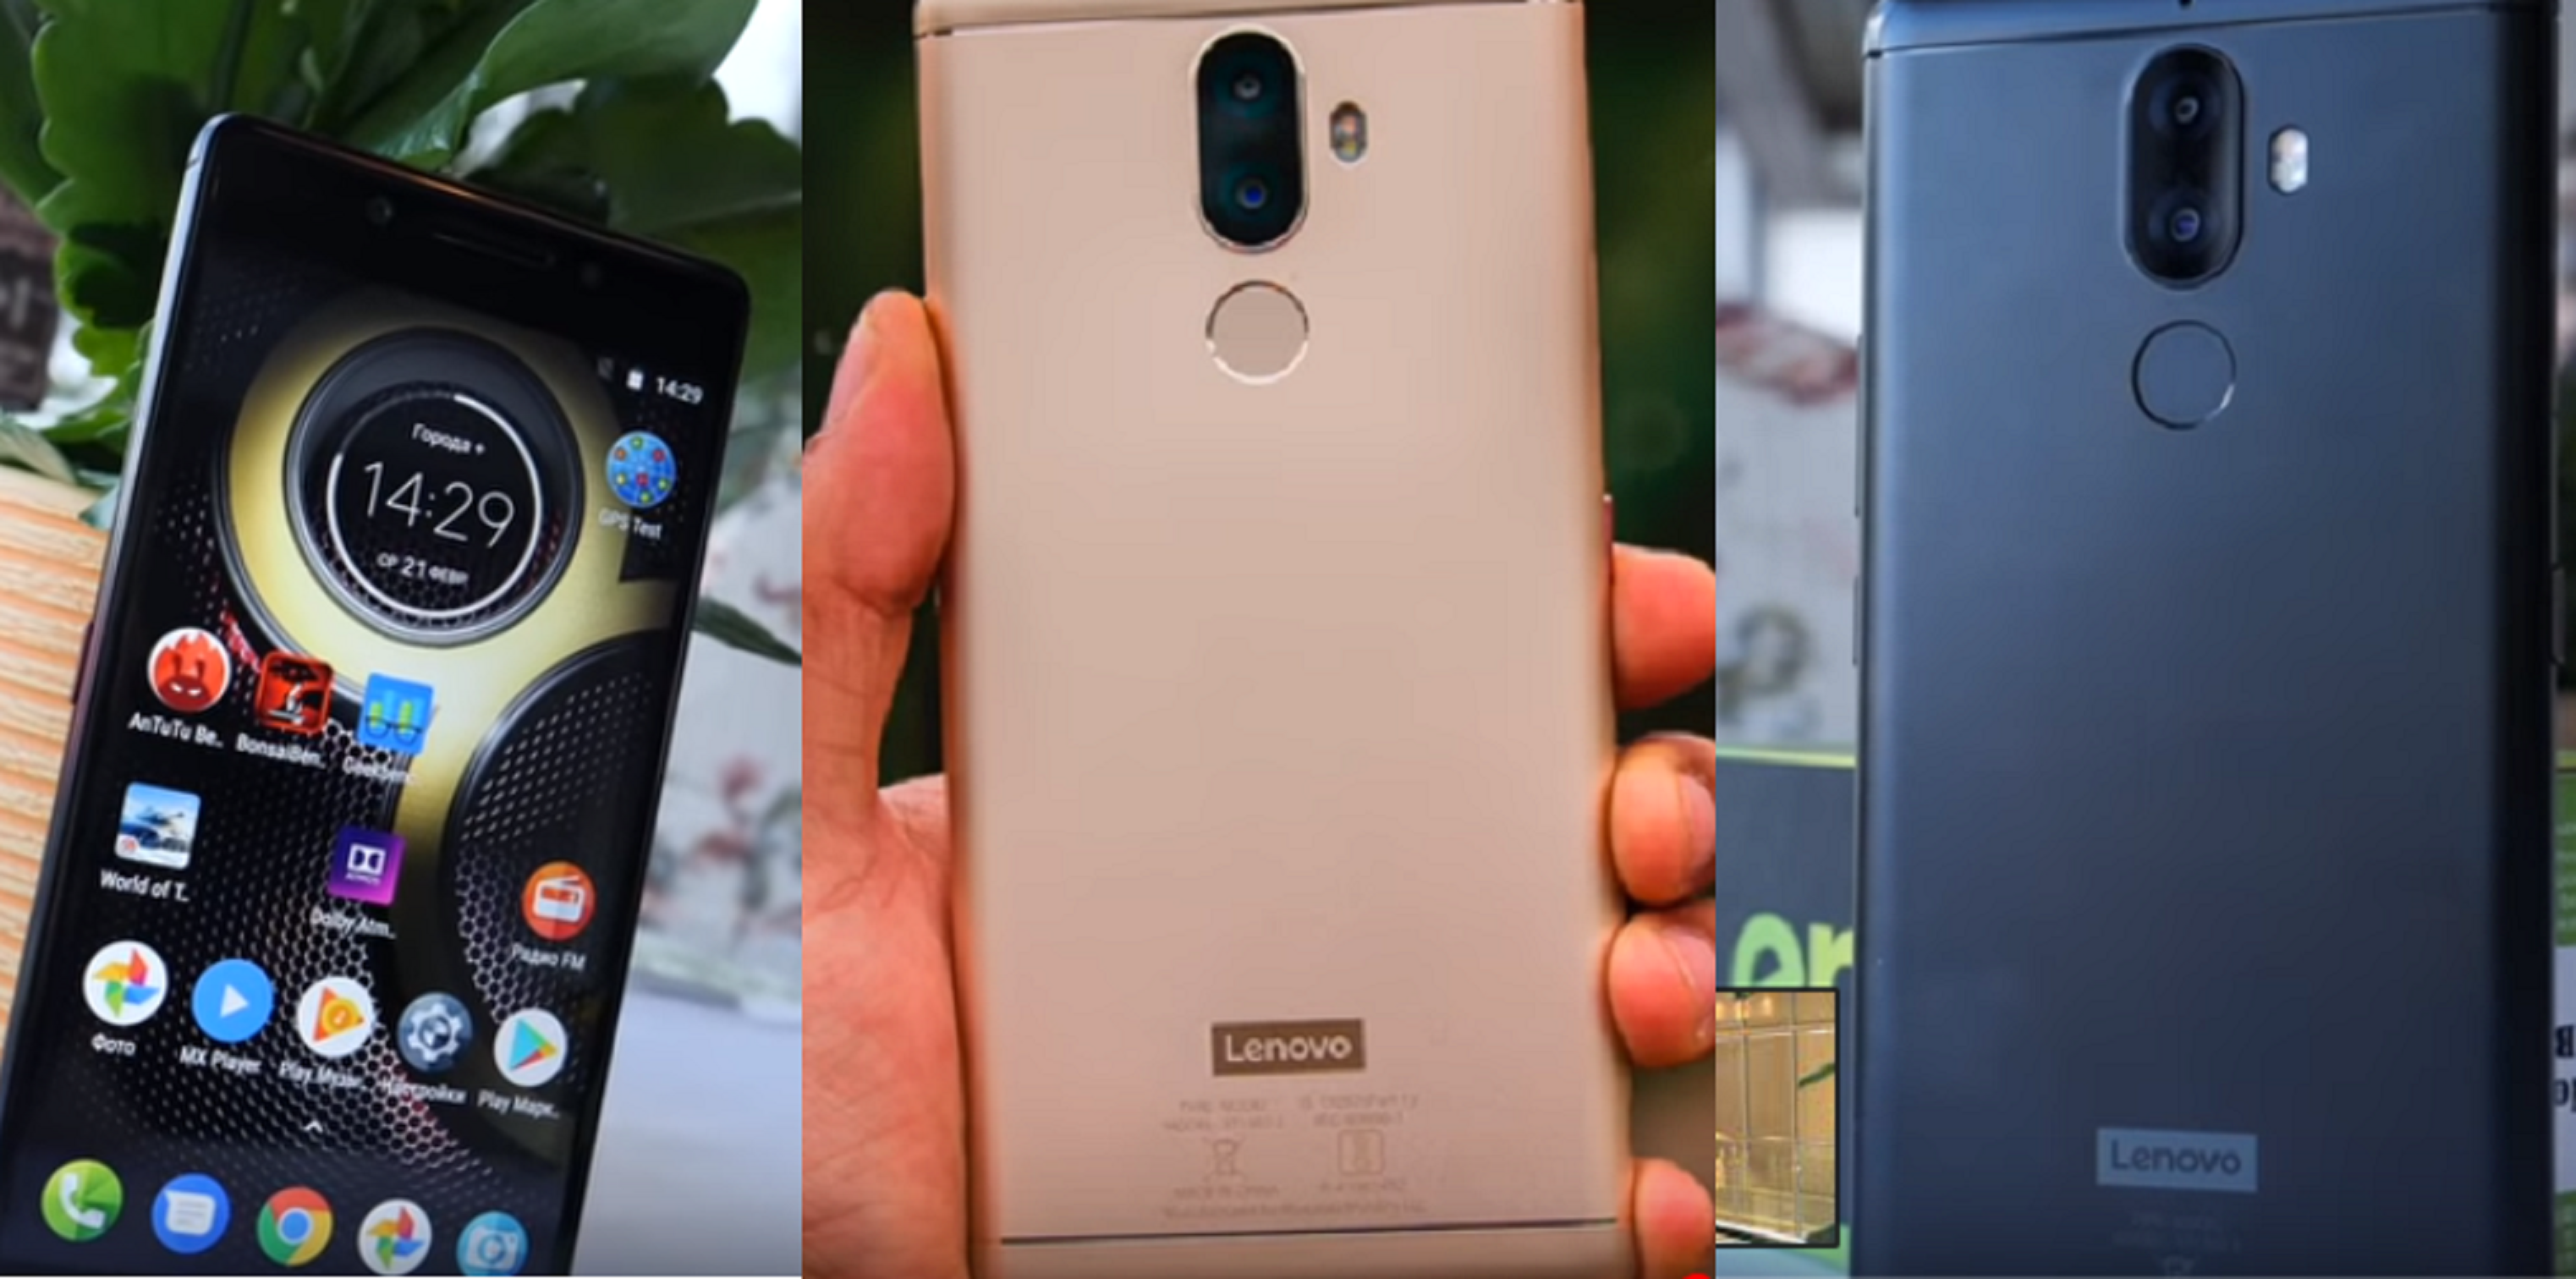 Smartphone Lenovo K8 Note 64GB - fordele og ulemper